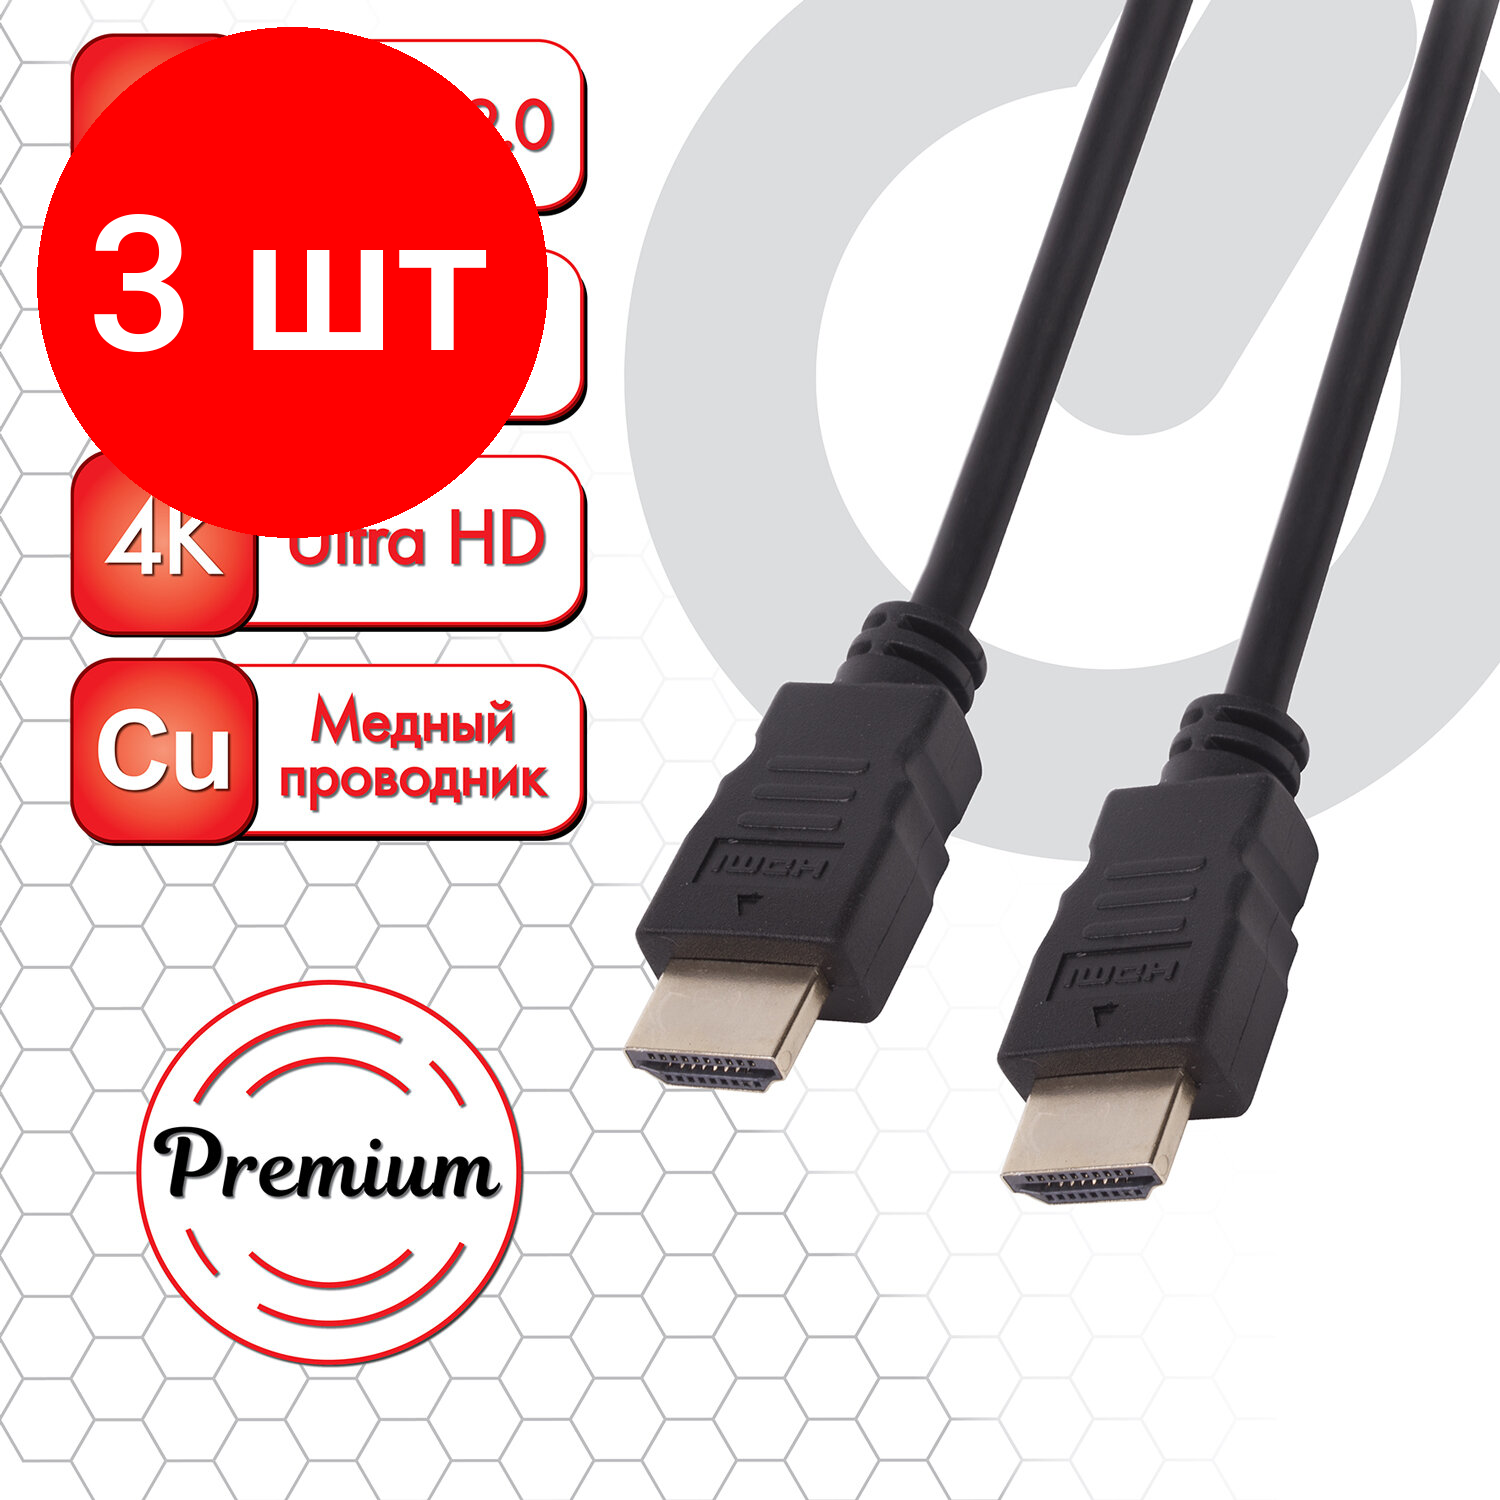 Комплект 3 шт, Кабель HDMI AM-AM, 3 м, SONNEN Premium, медь, для передачи аудио-видео, экранированный, 513131